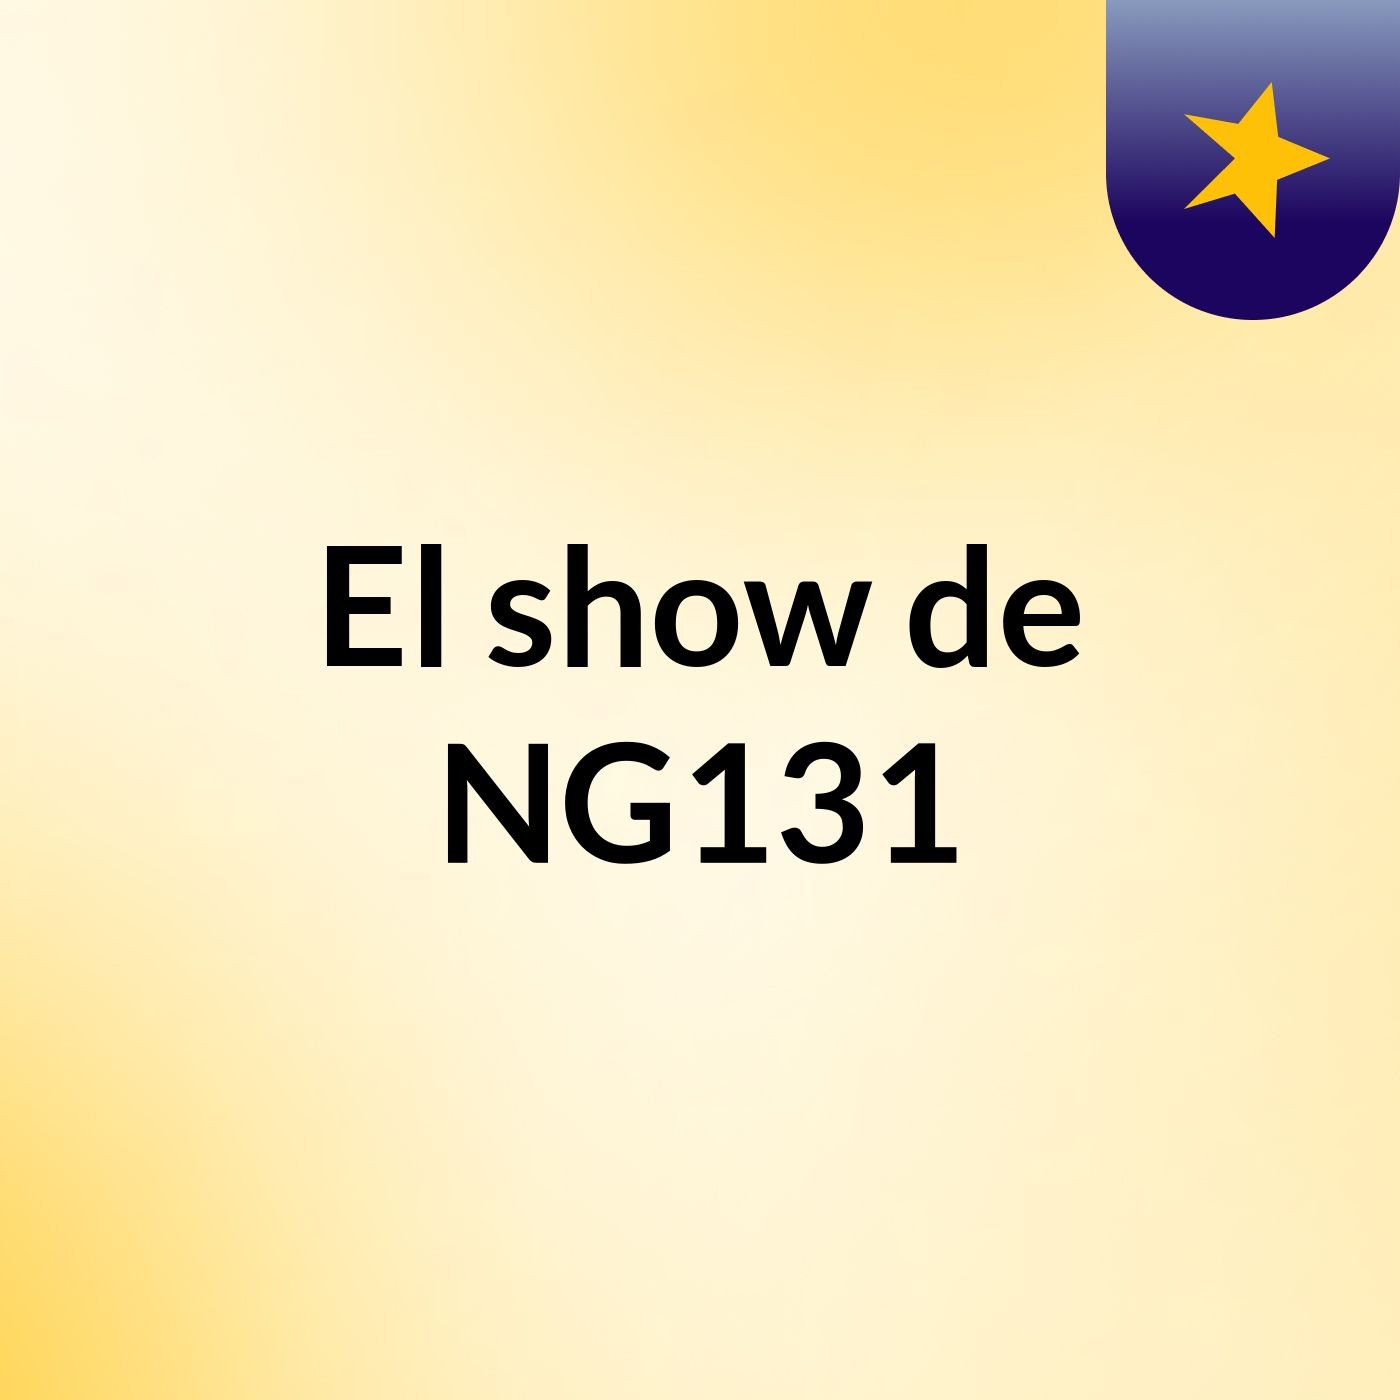 El show de NG131